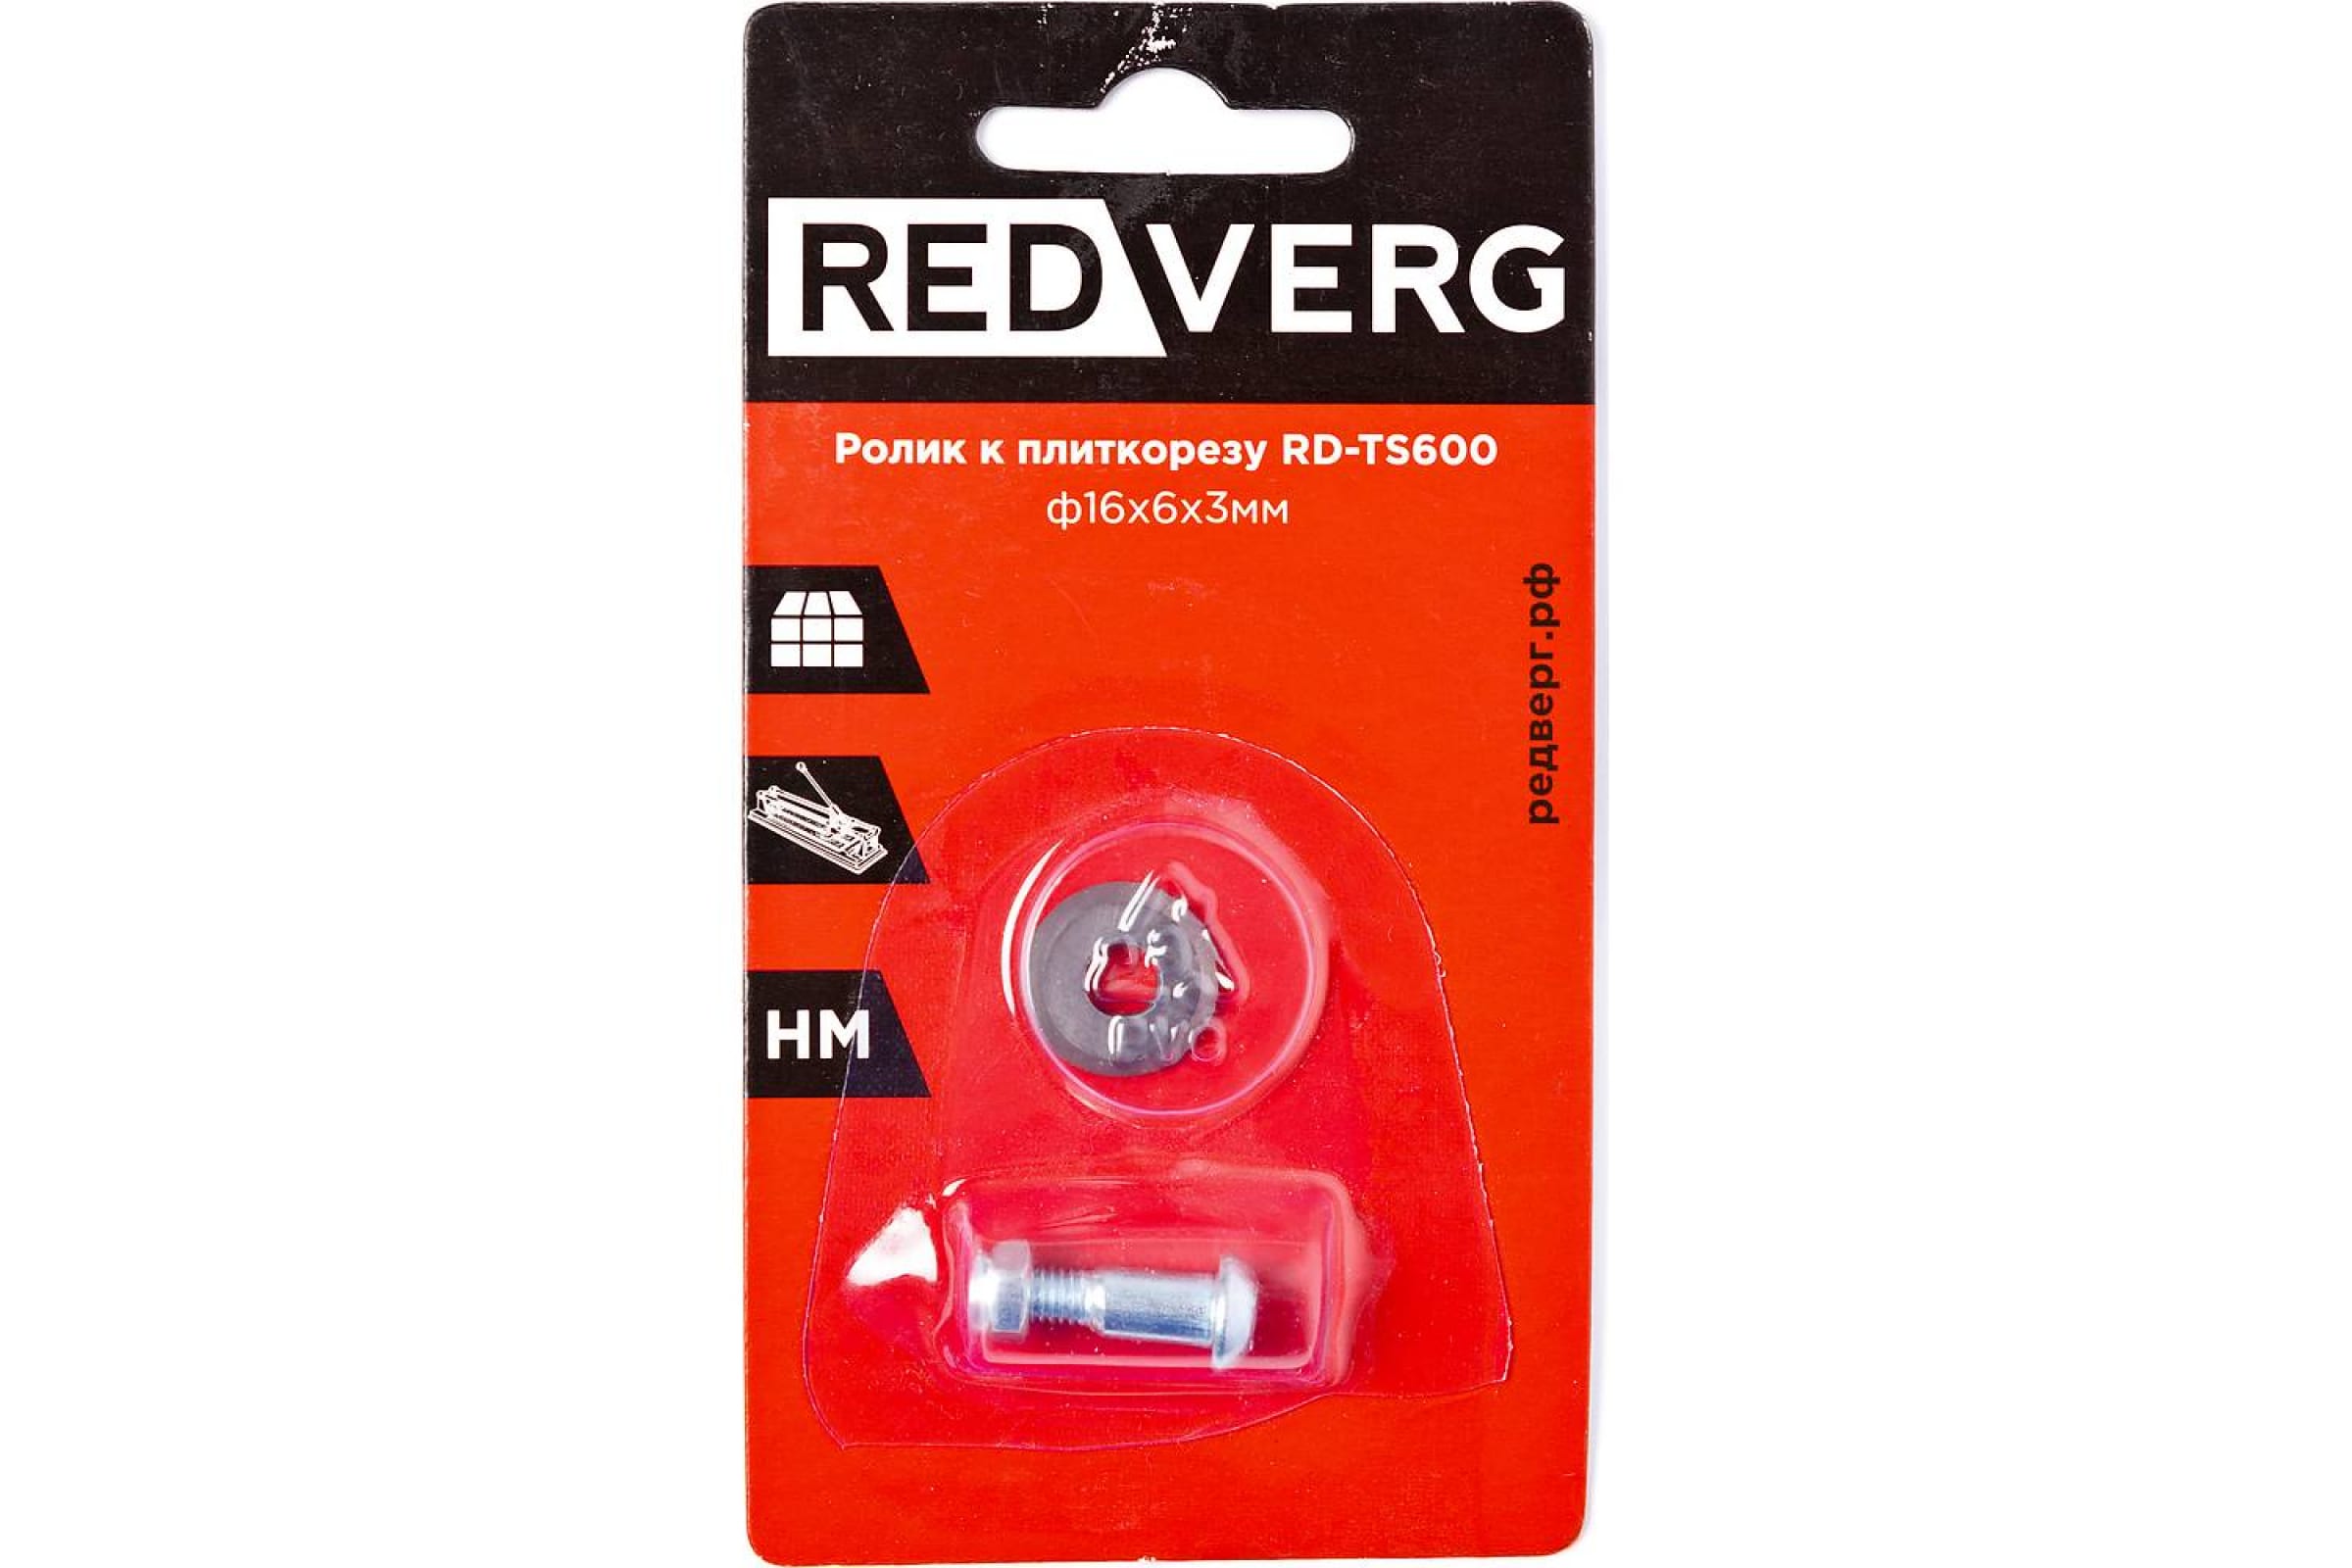 Ролик к плиткорезу RedVerg RD-TS600 ролик к плиткорезу энкор